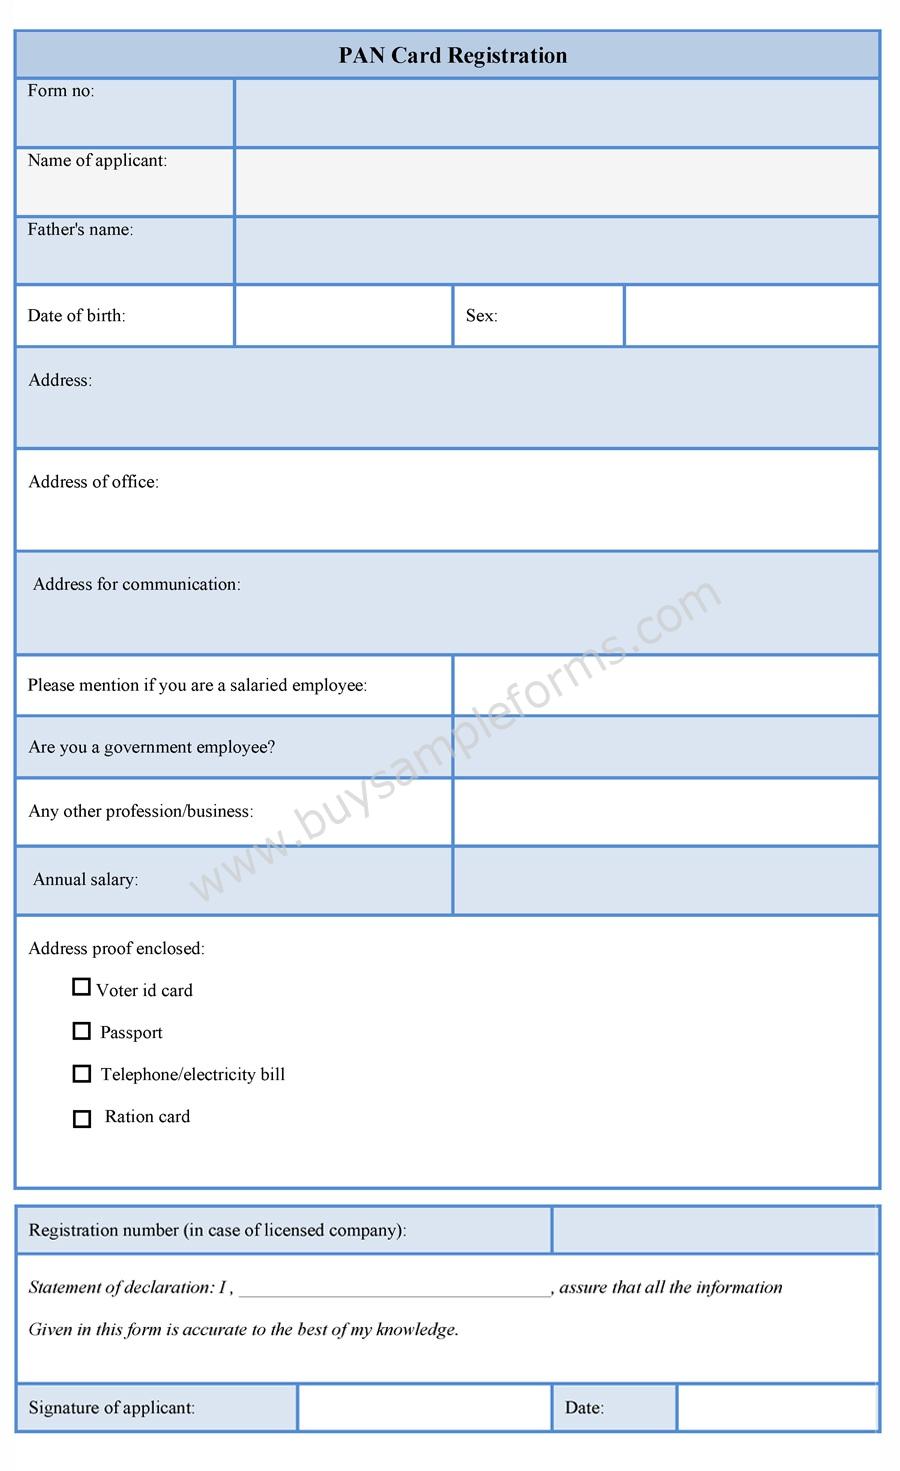 PAN Card Registration Form